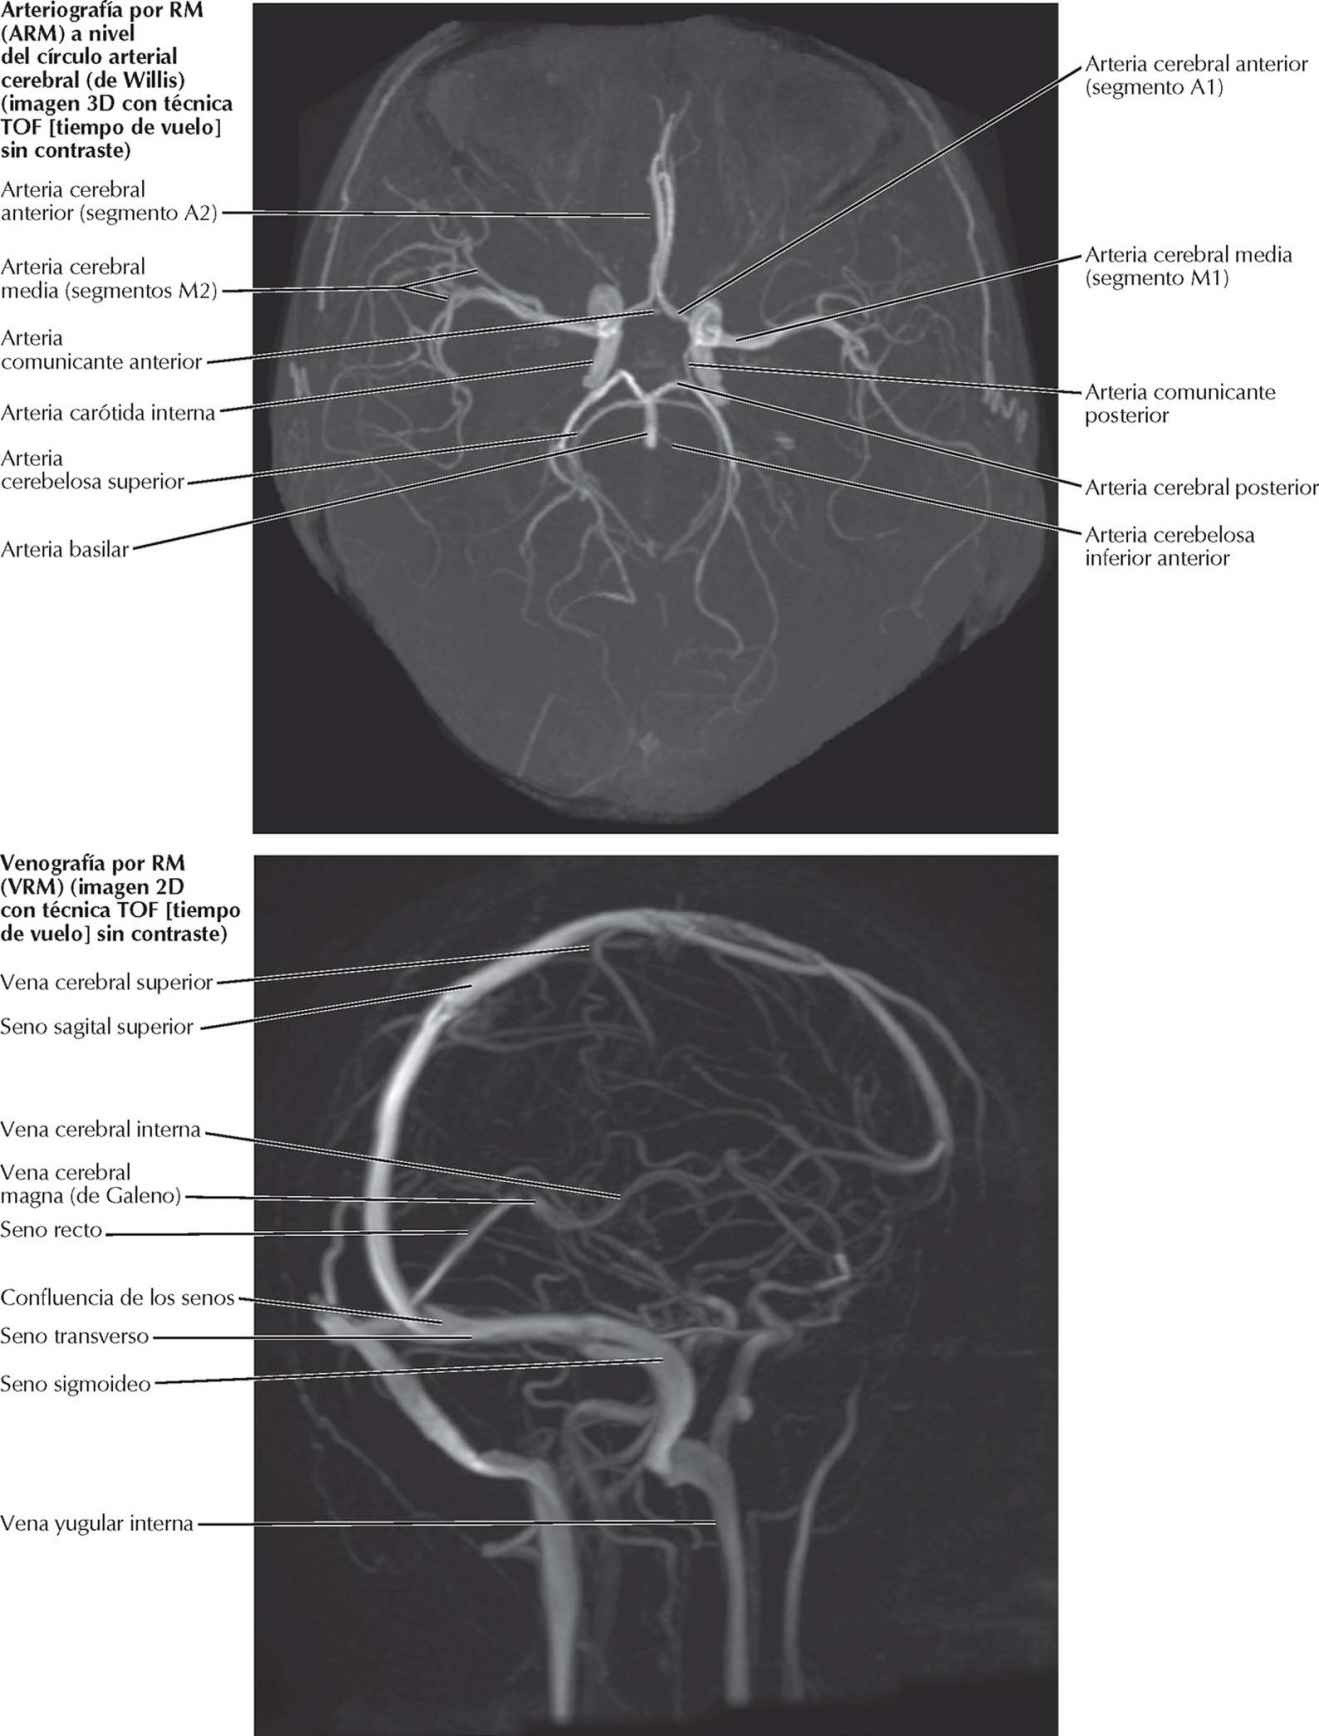 Angiografías por RM craneales (ARM y
VRM).